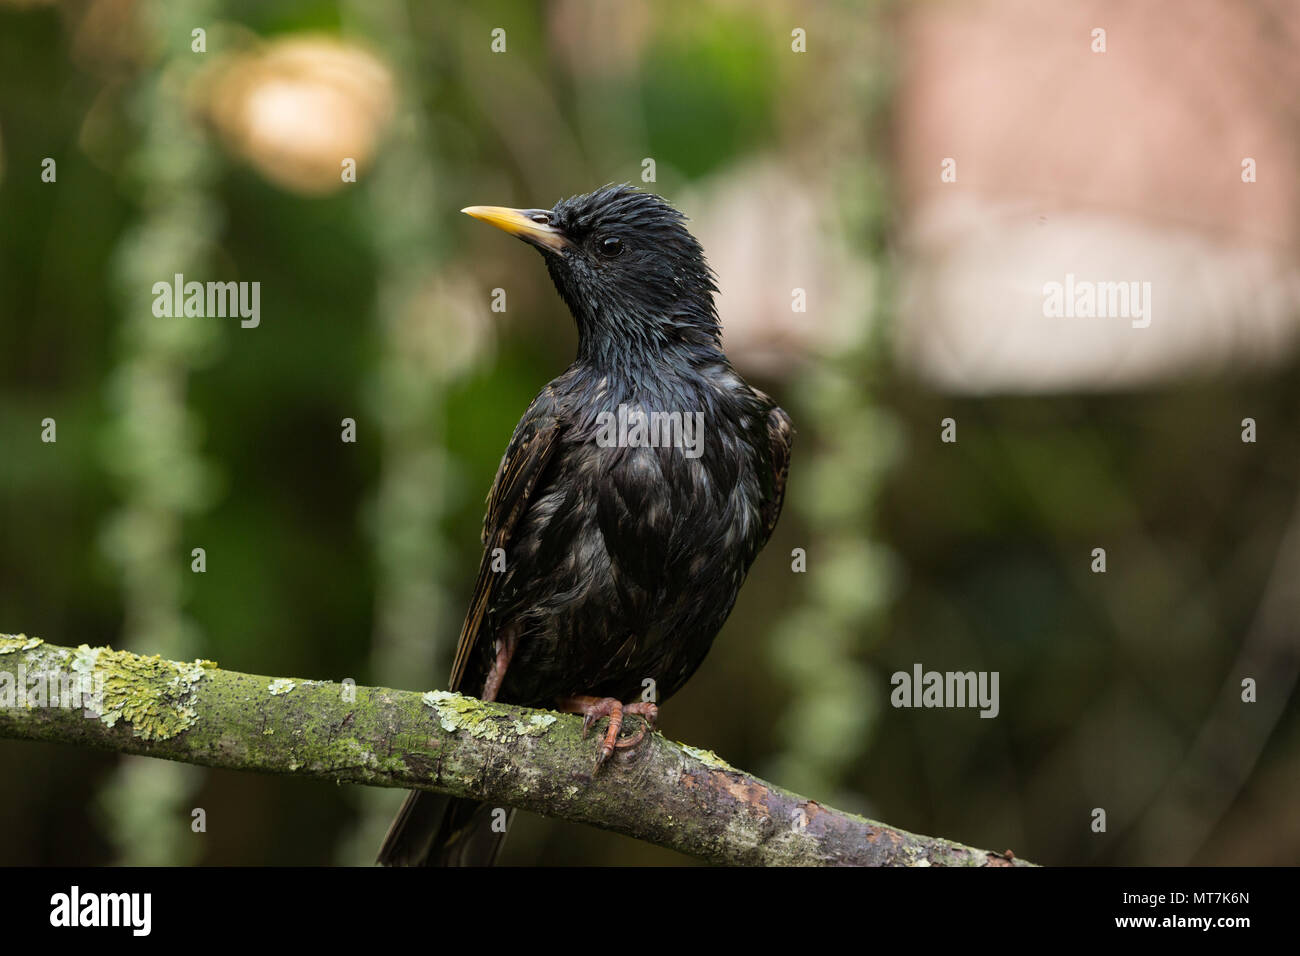 Starling húmedo posado en una rama después de la ducha de lluvia Foto de stock